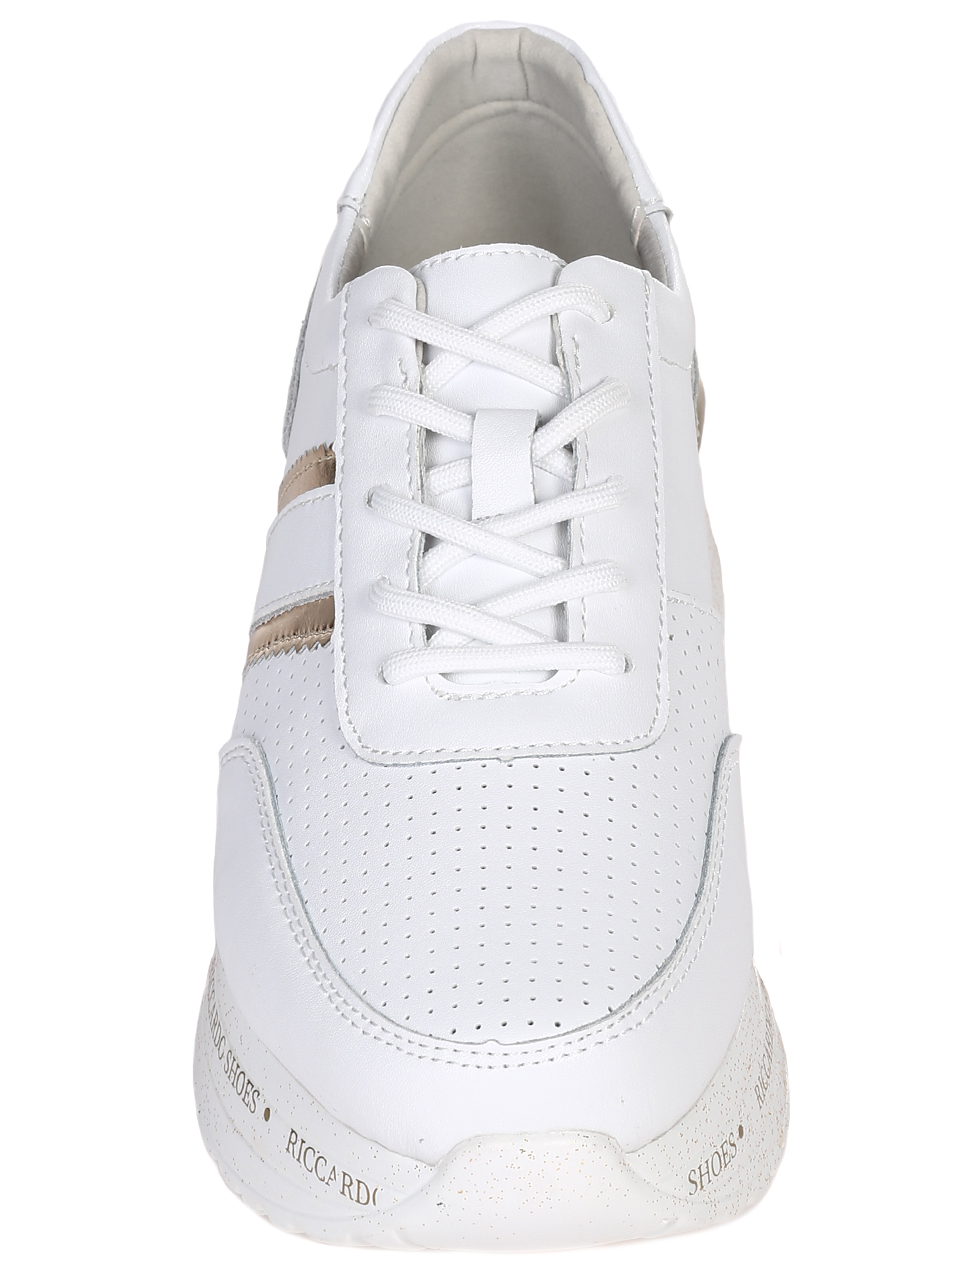 Ежедневни дамски обувки от естествена кожа в бяло 3AF-22119 white